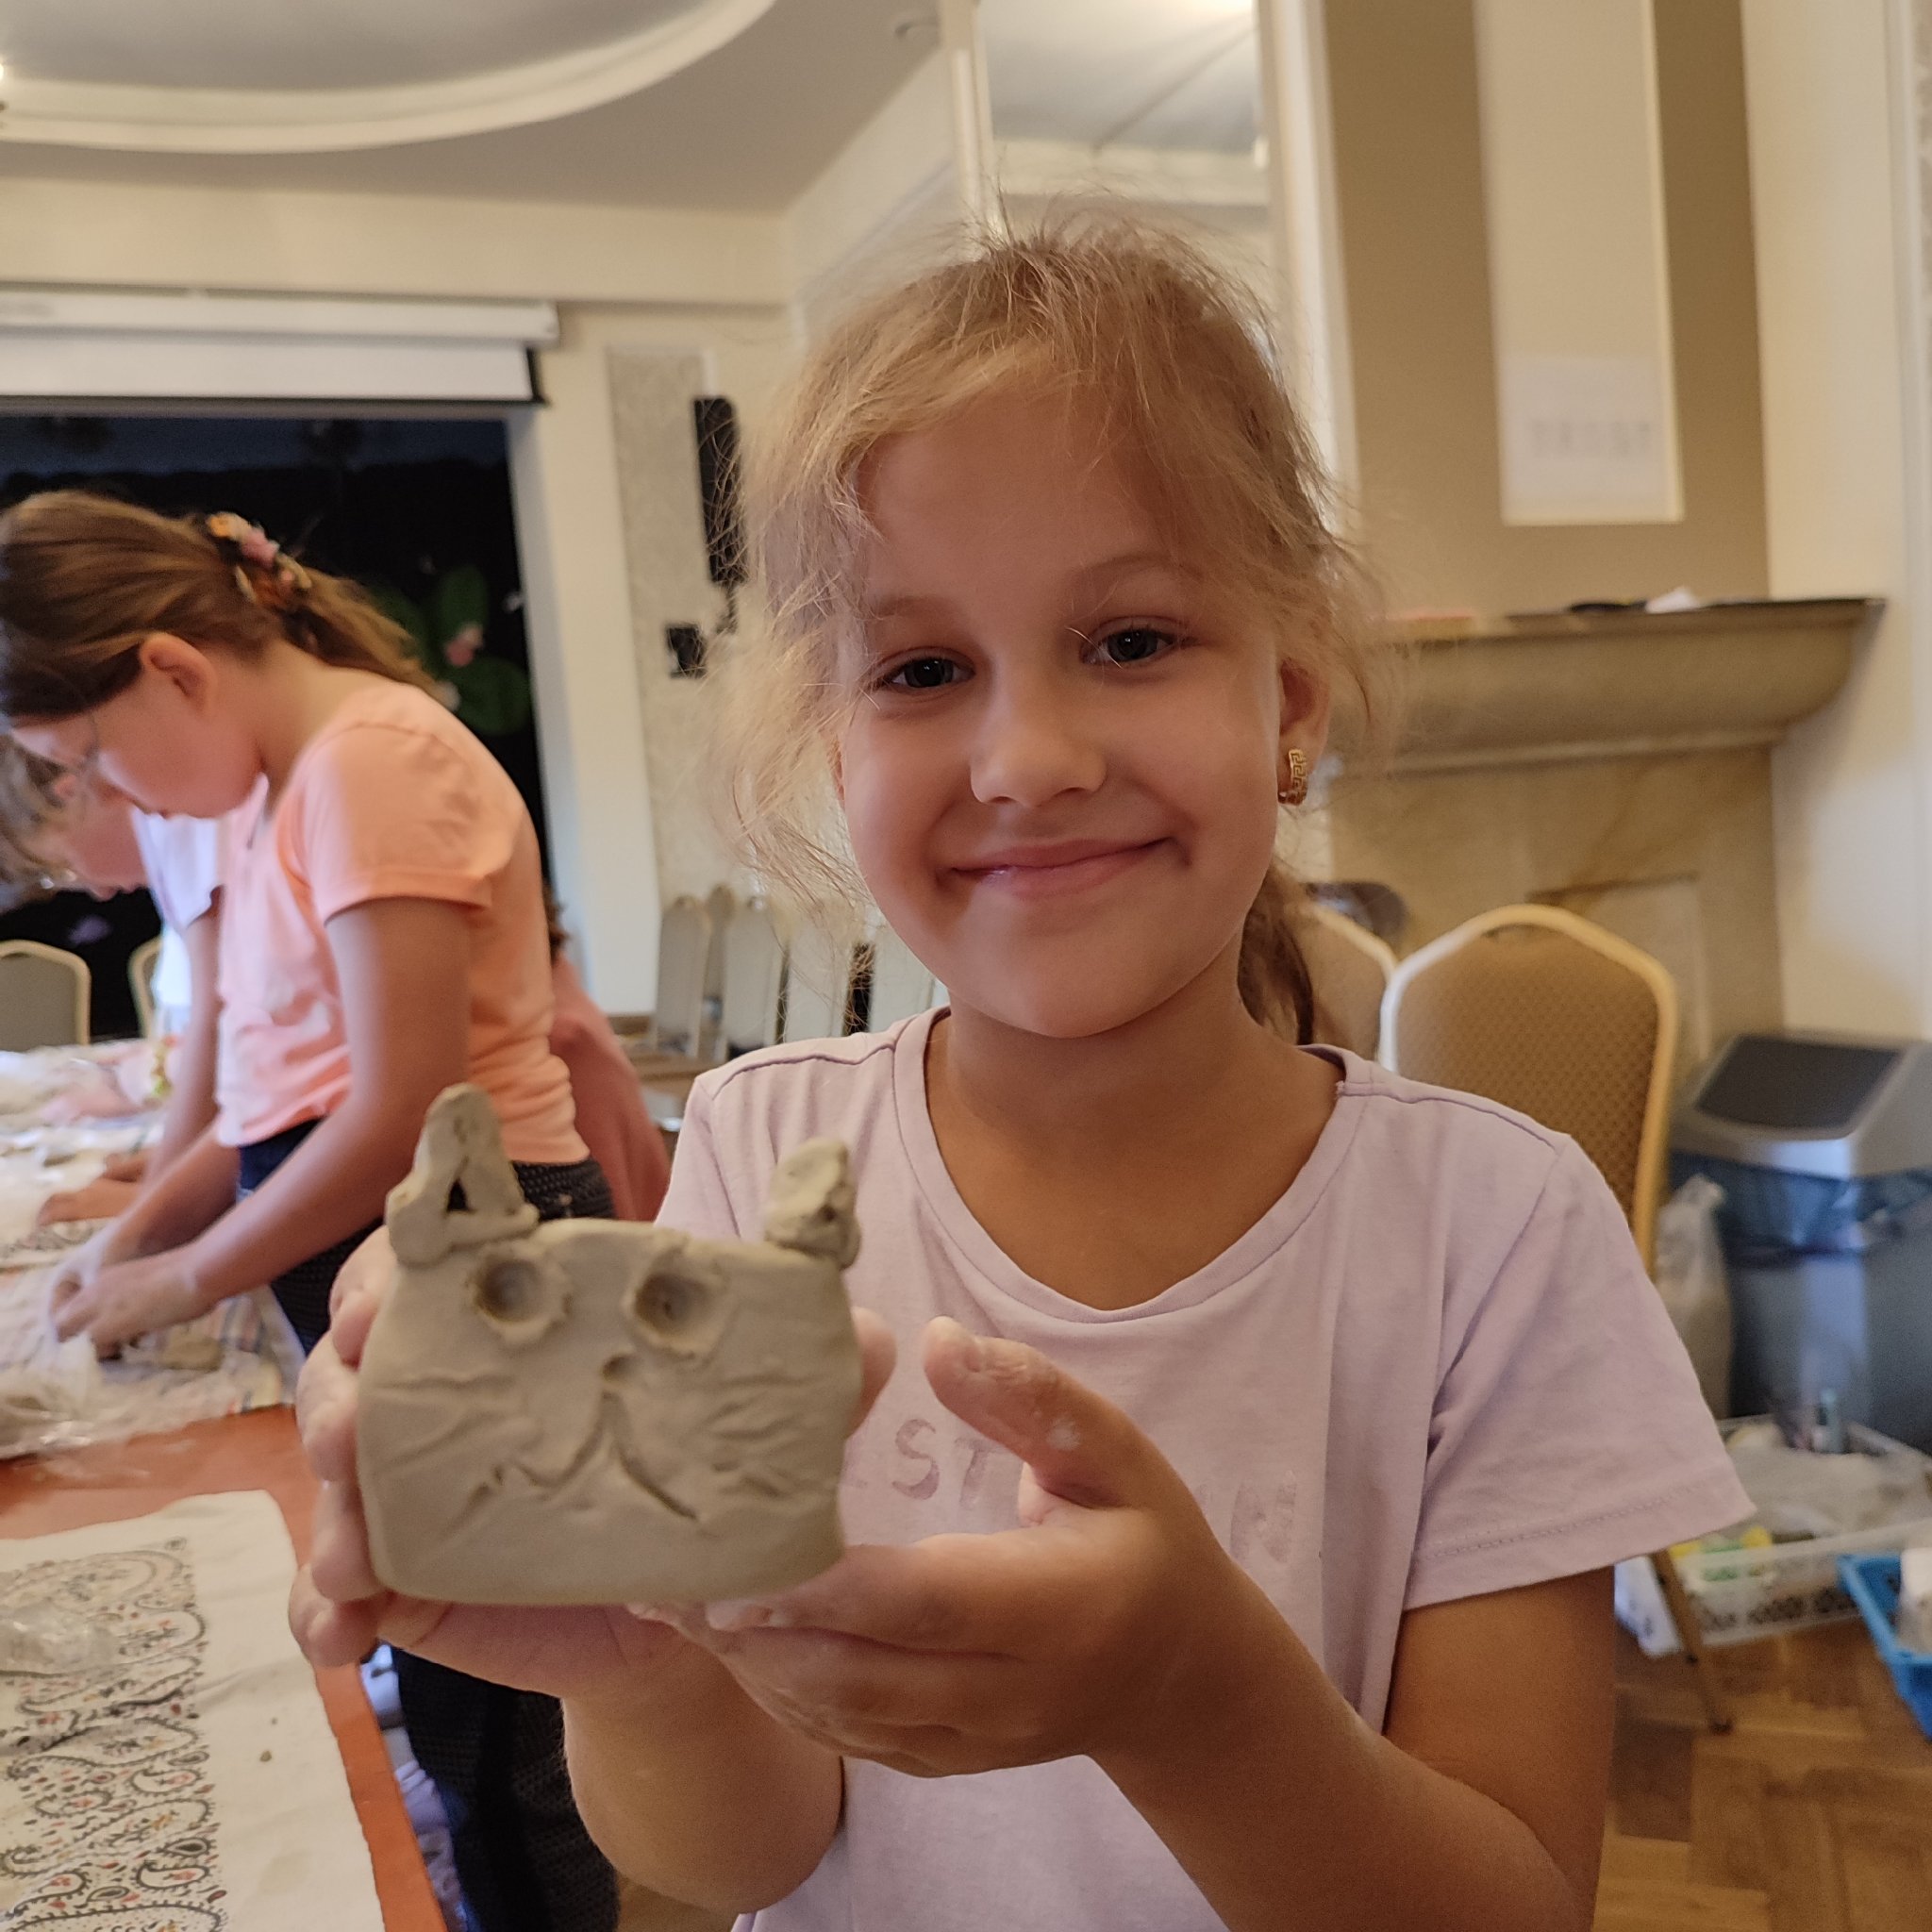 dziewczynka trzyma kotka wyrzeźbionego z gliny